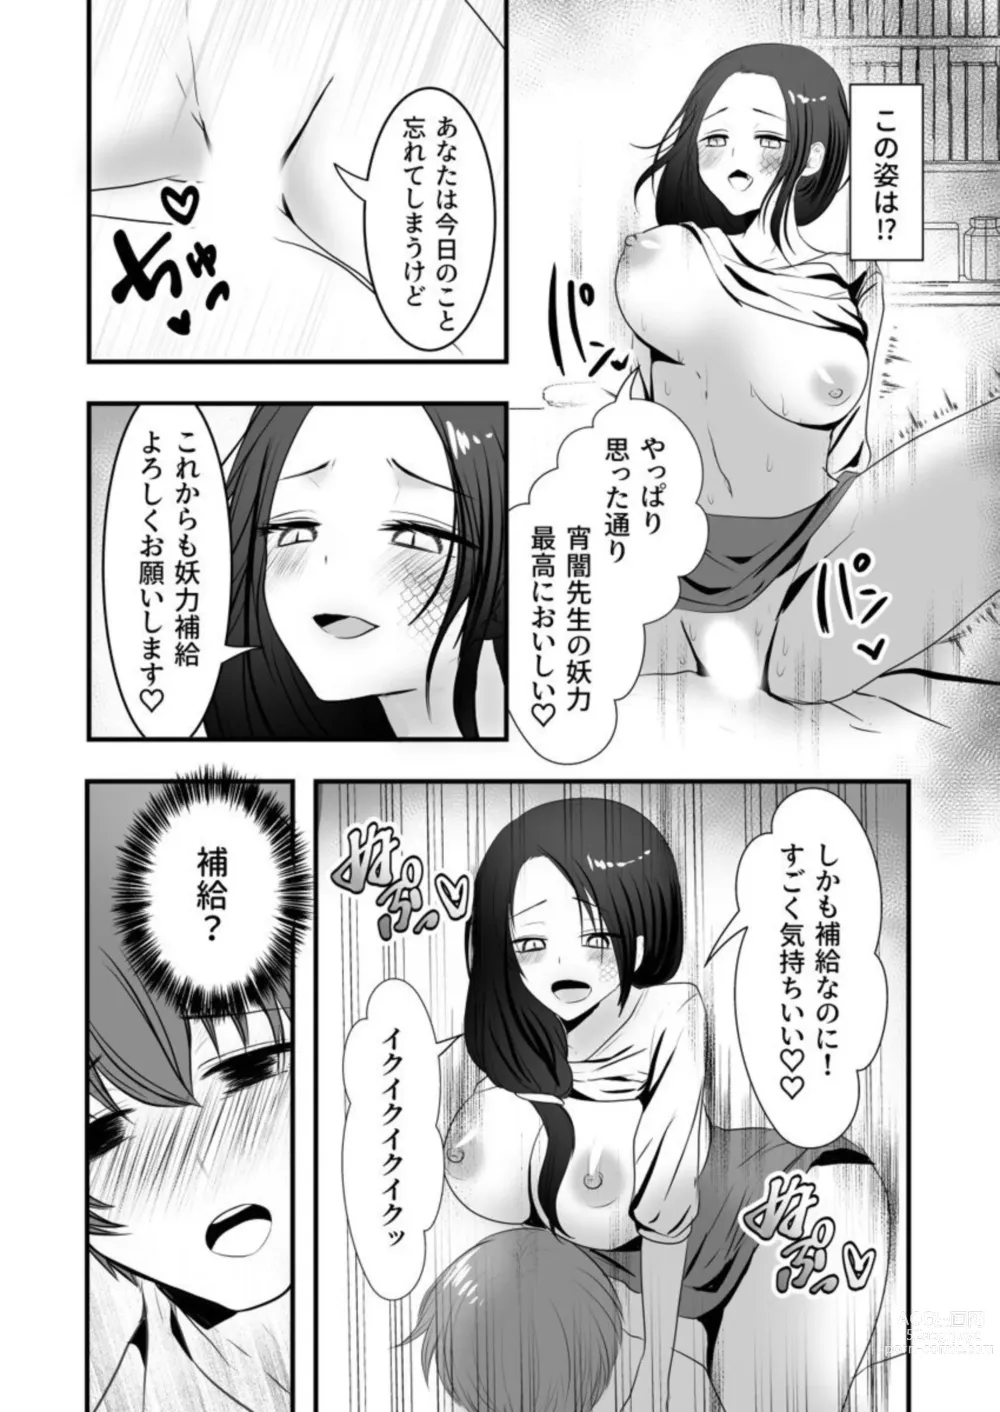 Page 25 of manga Ayakashi Shibori ~ Gokujō no sei wa 胎 No Naka ni 1